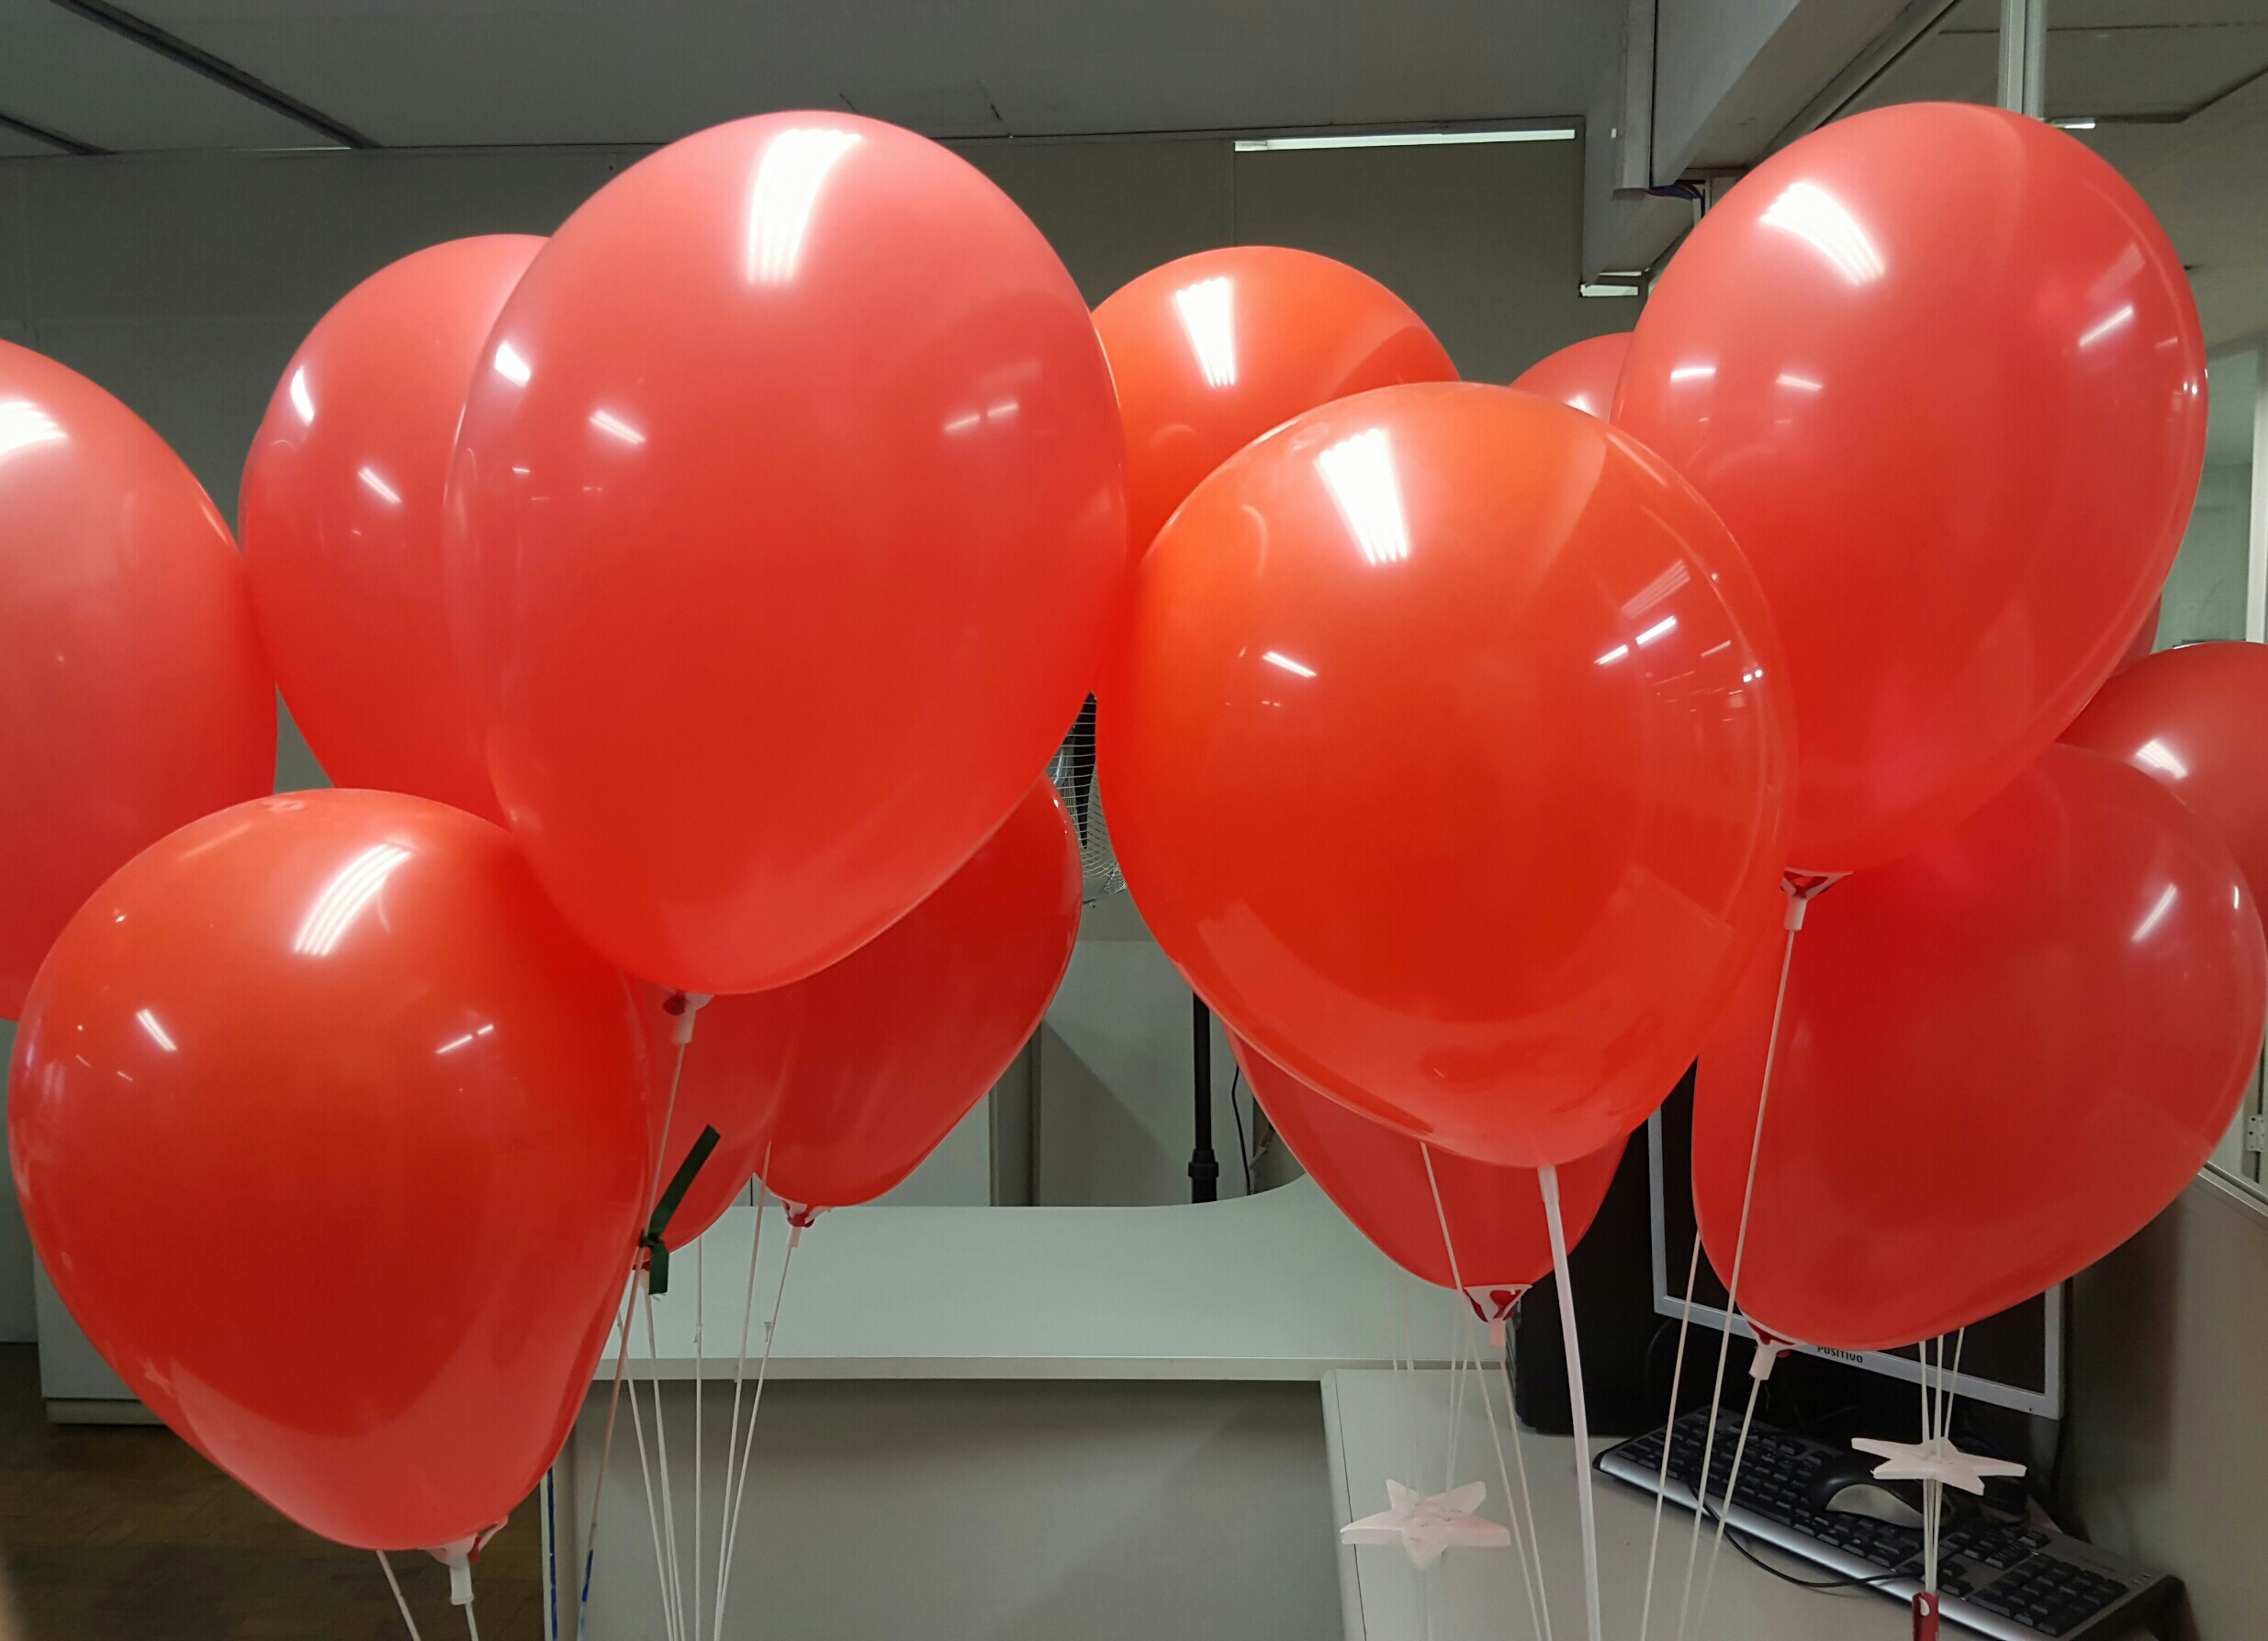 #Paracegover Na Imagem estão diversos balões vermelhos estão presos a um suporte em cima de uma mesa.